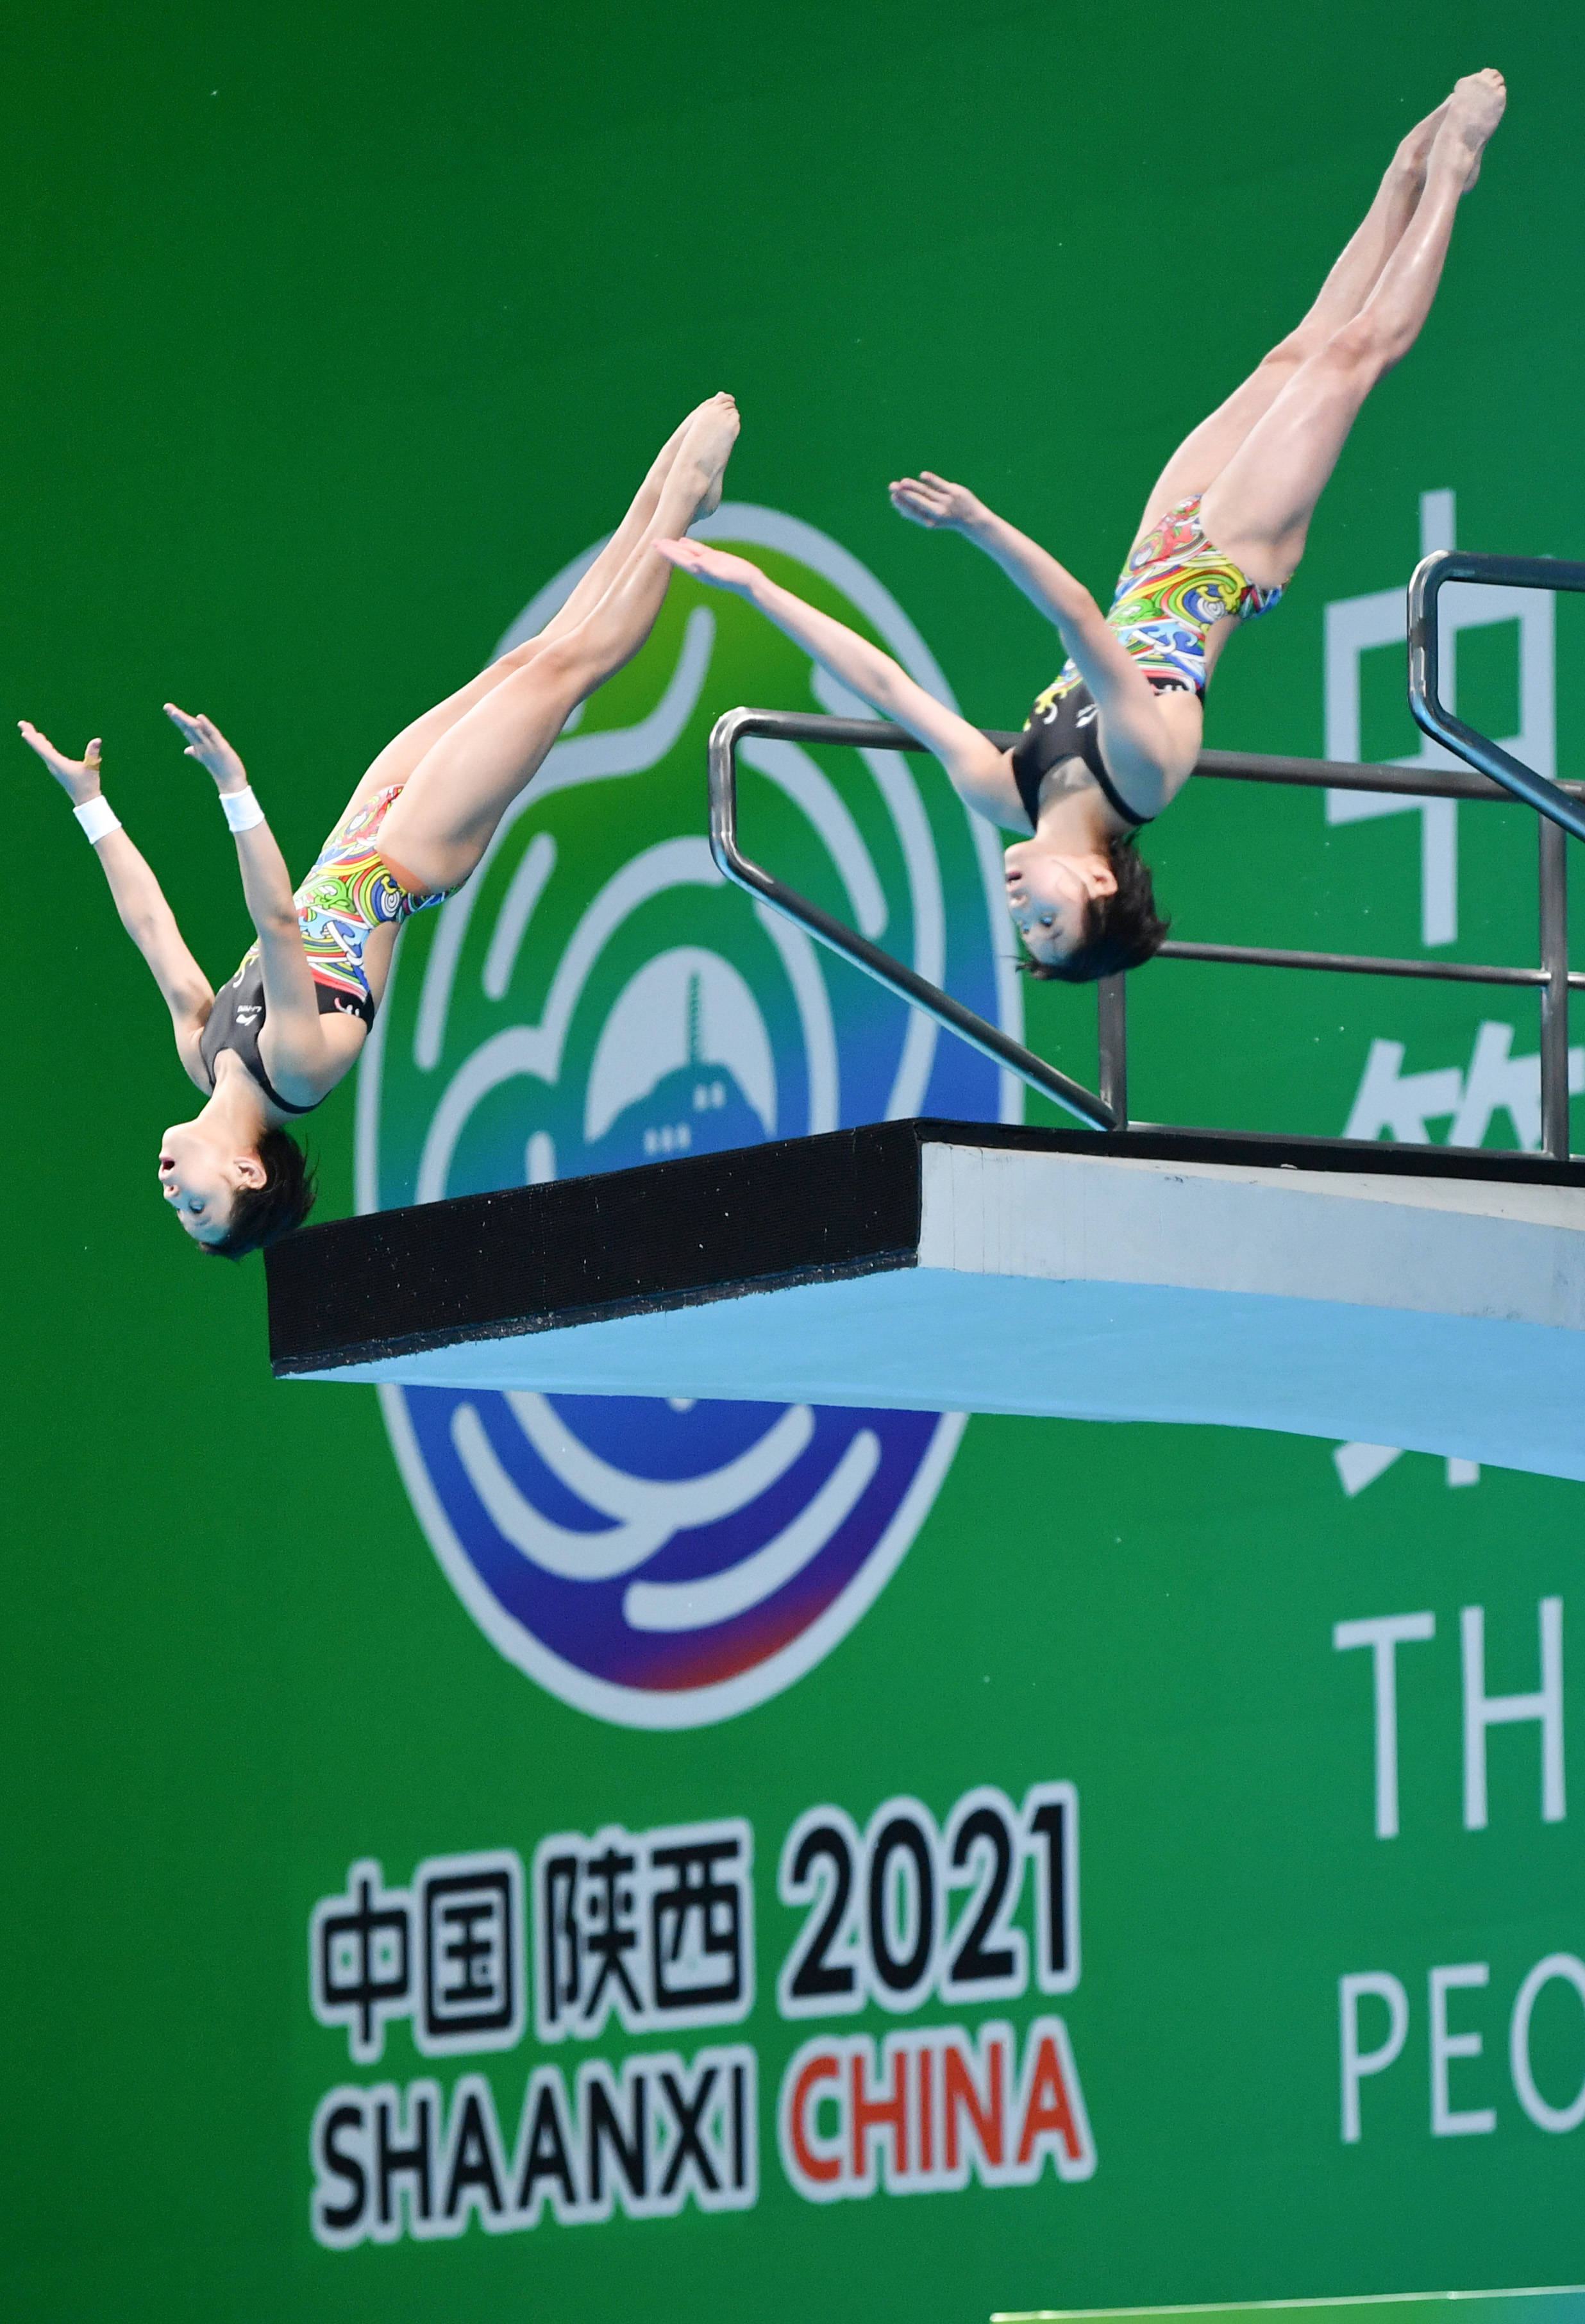 跳水—青年组女子双人跳台决赛赛况